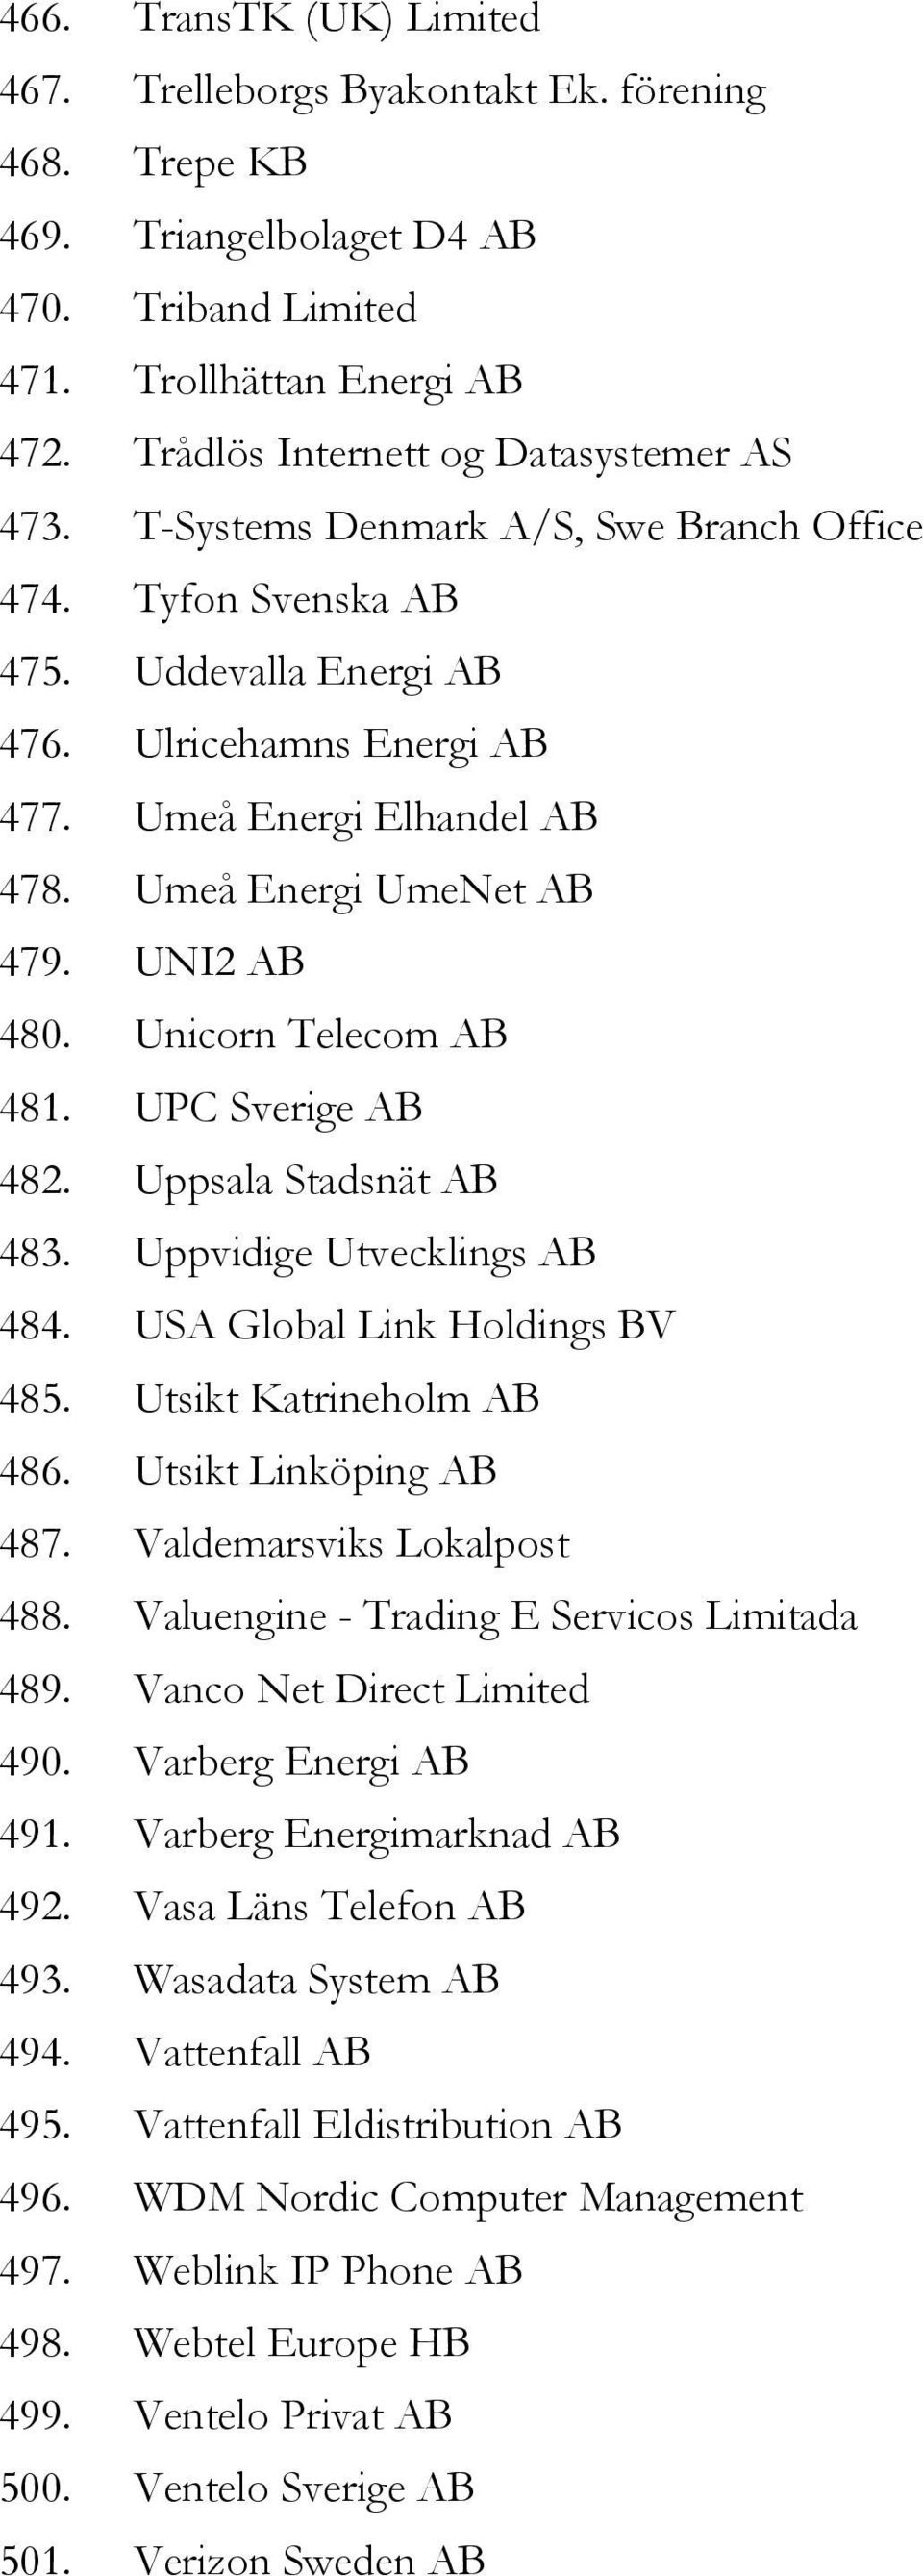 Umeå Energi UmeNet AB 479. UNI2 AB 480. Unicorn Telecom AB 481. UPC Sverige AB 482. Uppsala Stadsnät AB 483. Uppvidige Utvecklings AB 484. USA Global Link Holdings BV 485. Utsikt Katrineholm AB 486.